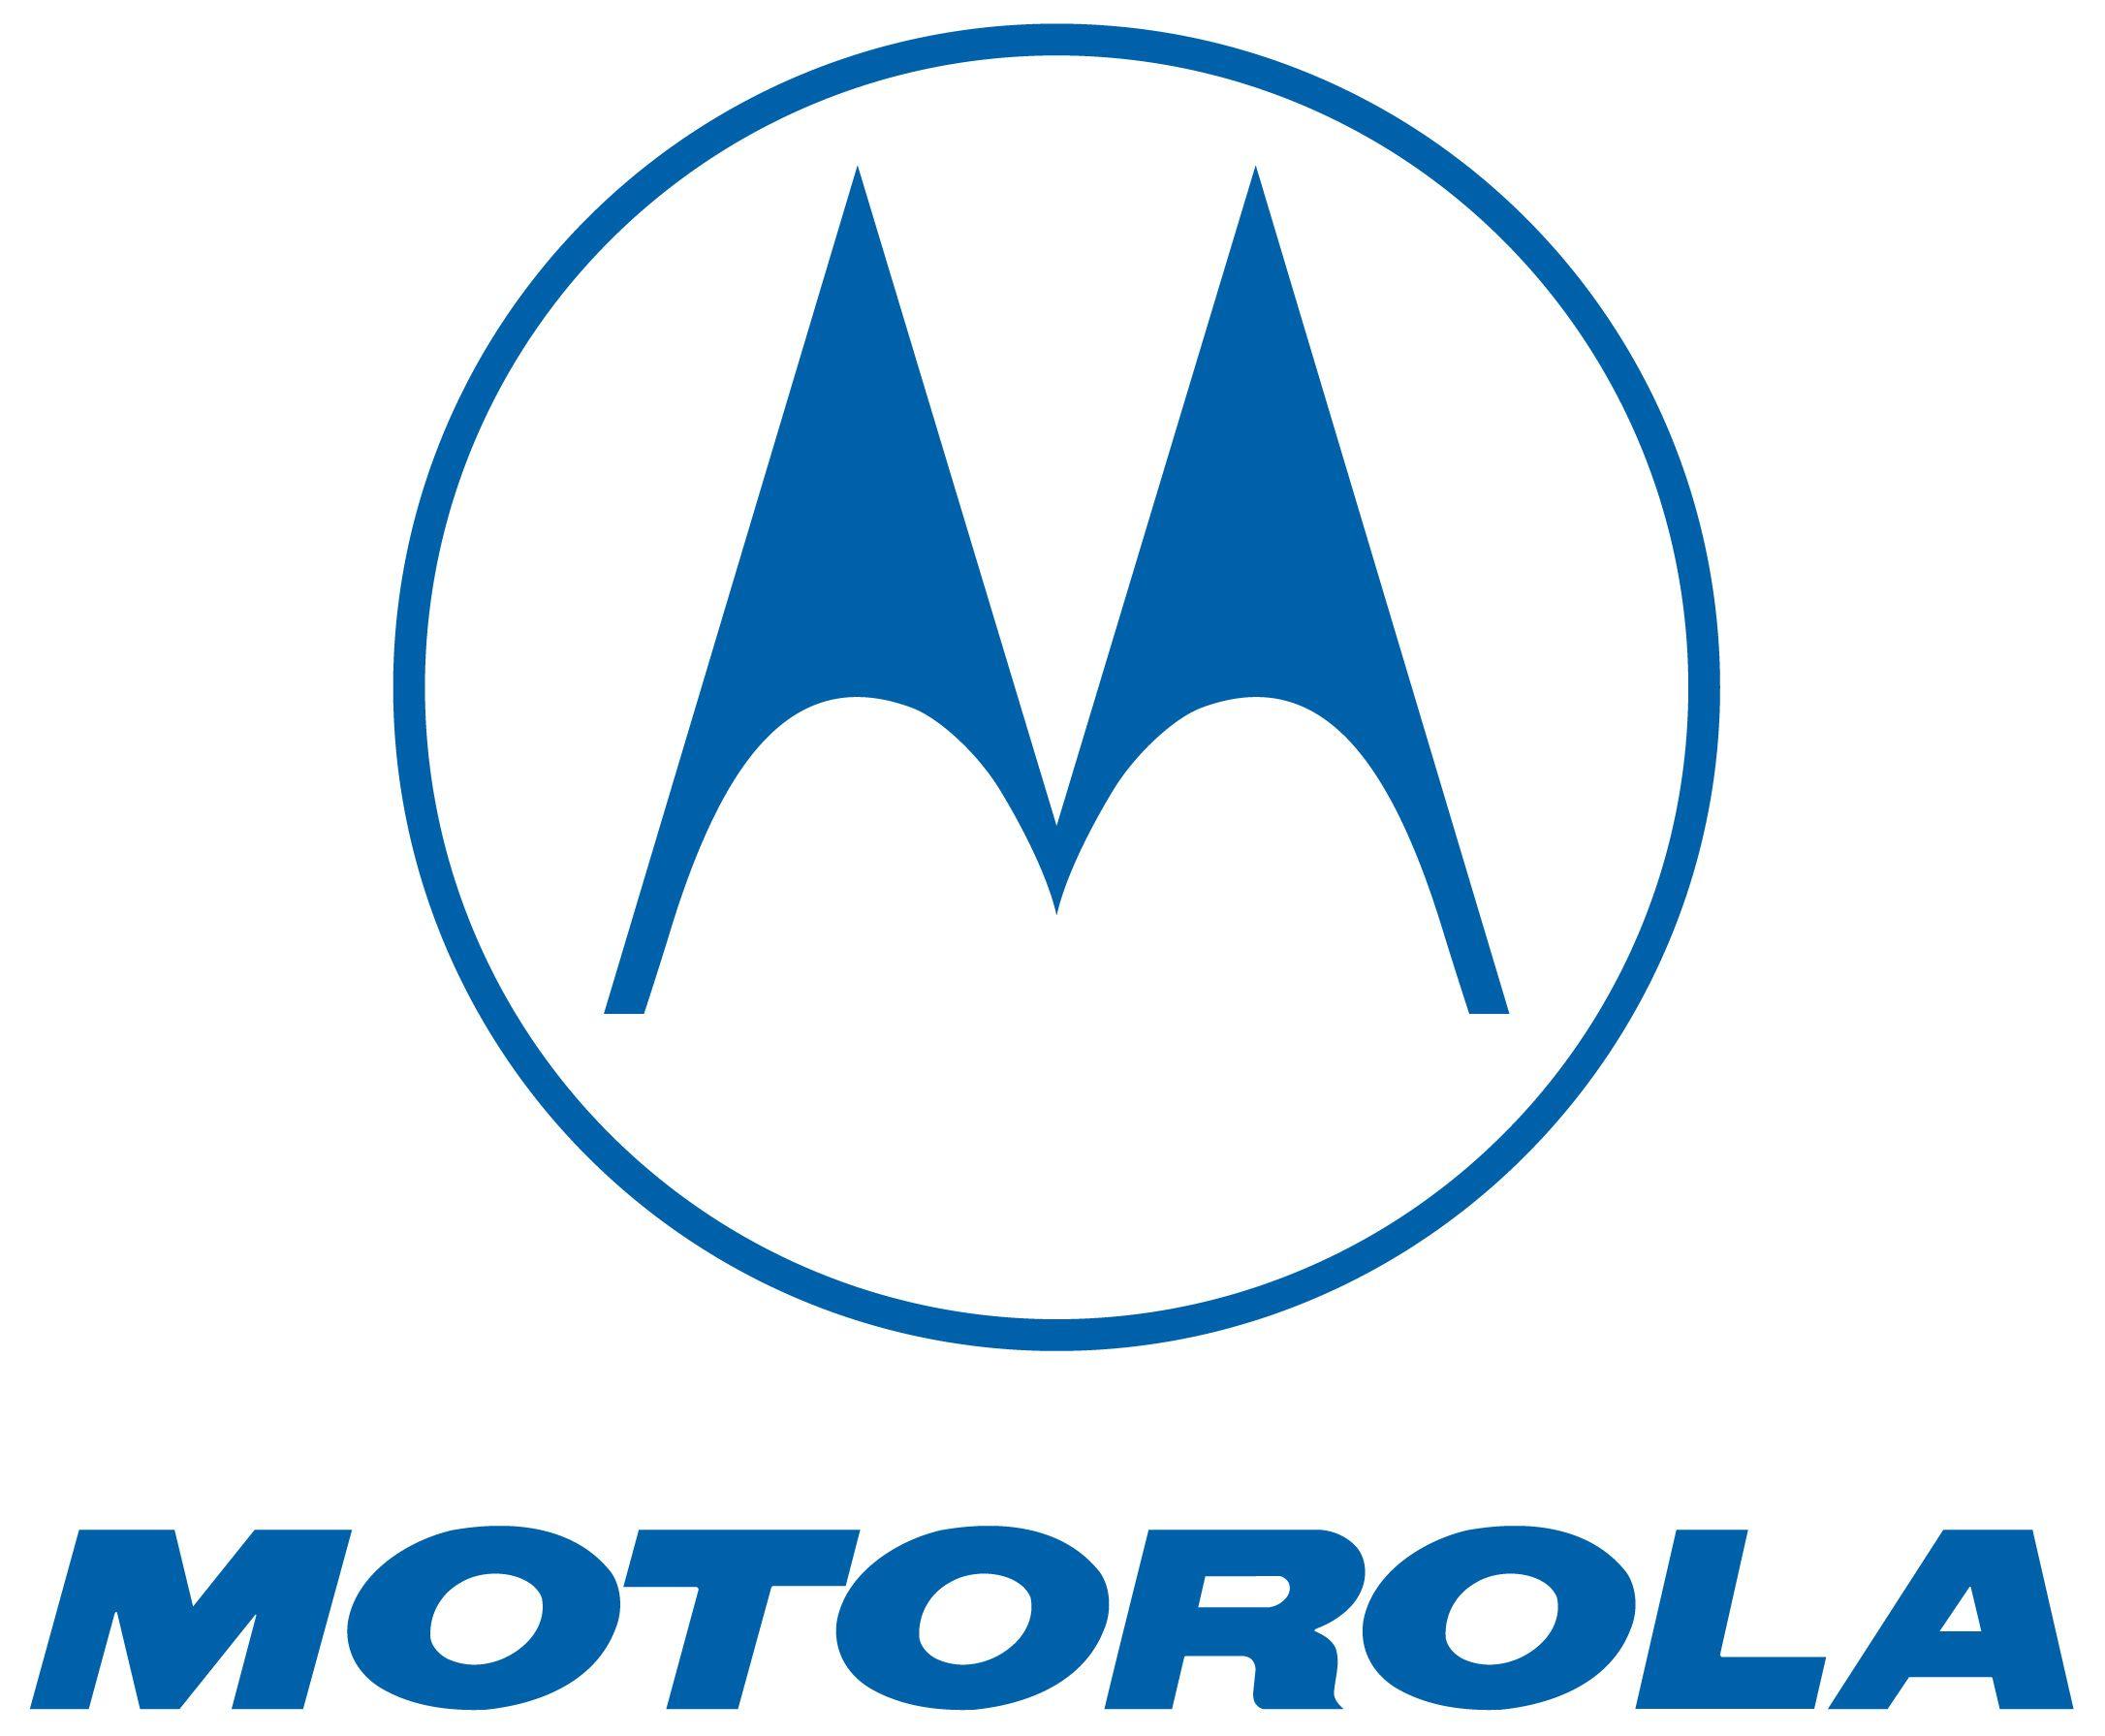 Blue Motorola Logo - Motorola PNG Transparent Motorola.PNG Images. | PlusPNG